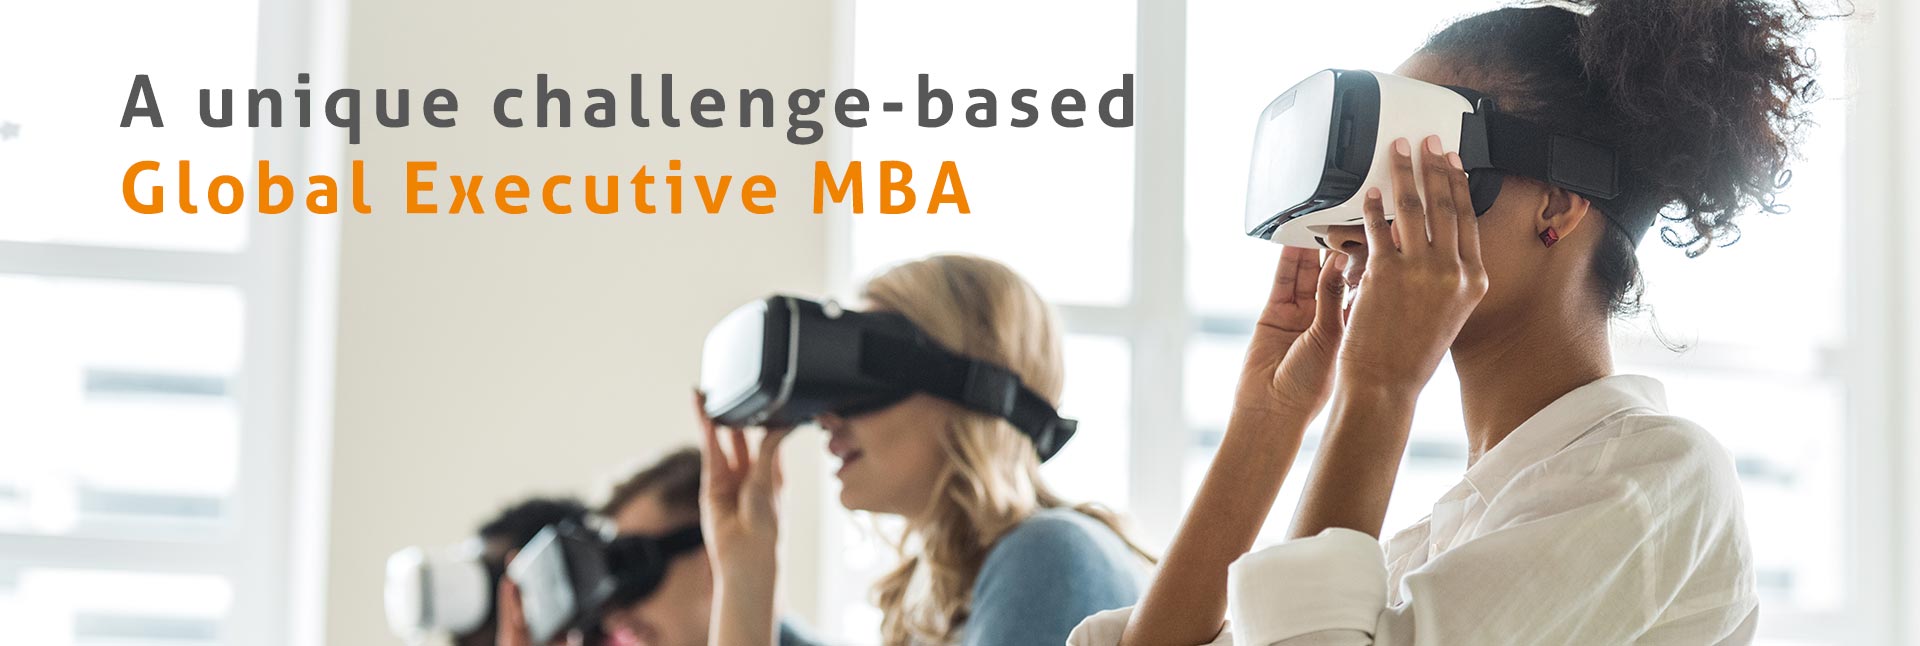 Global Executive MBA | Challenge-Based